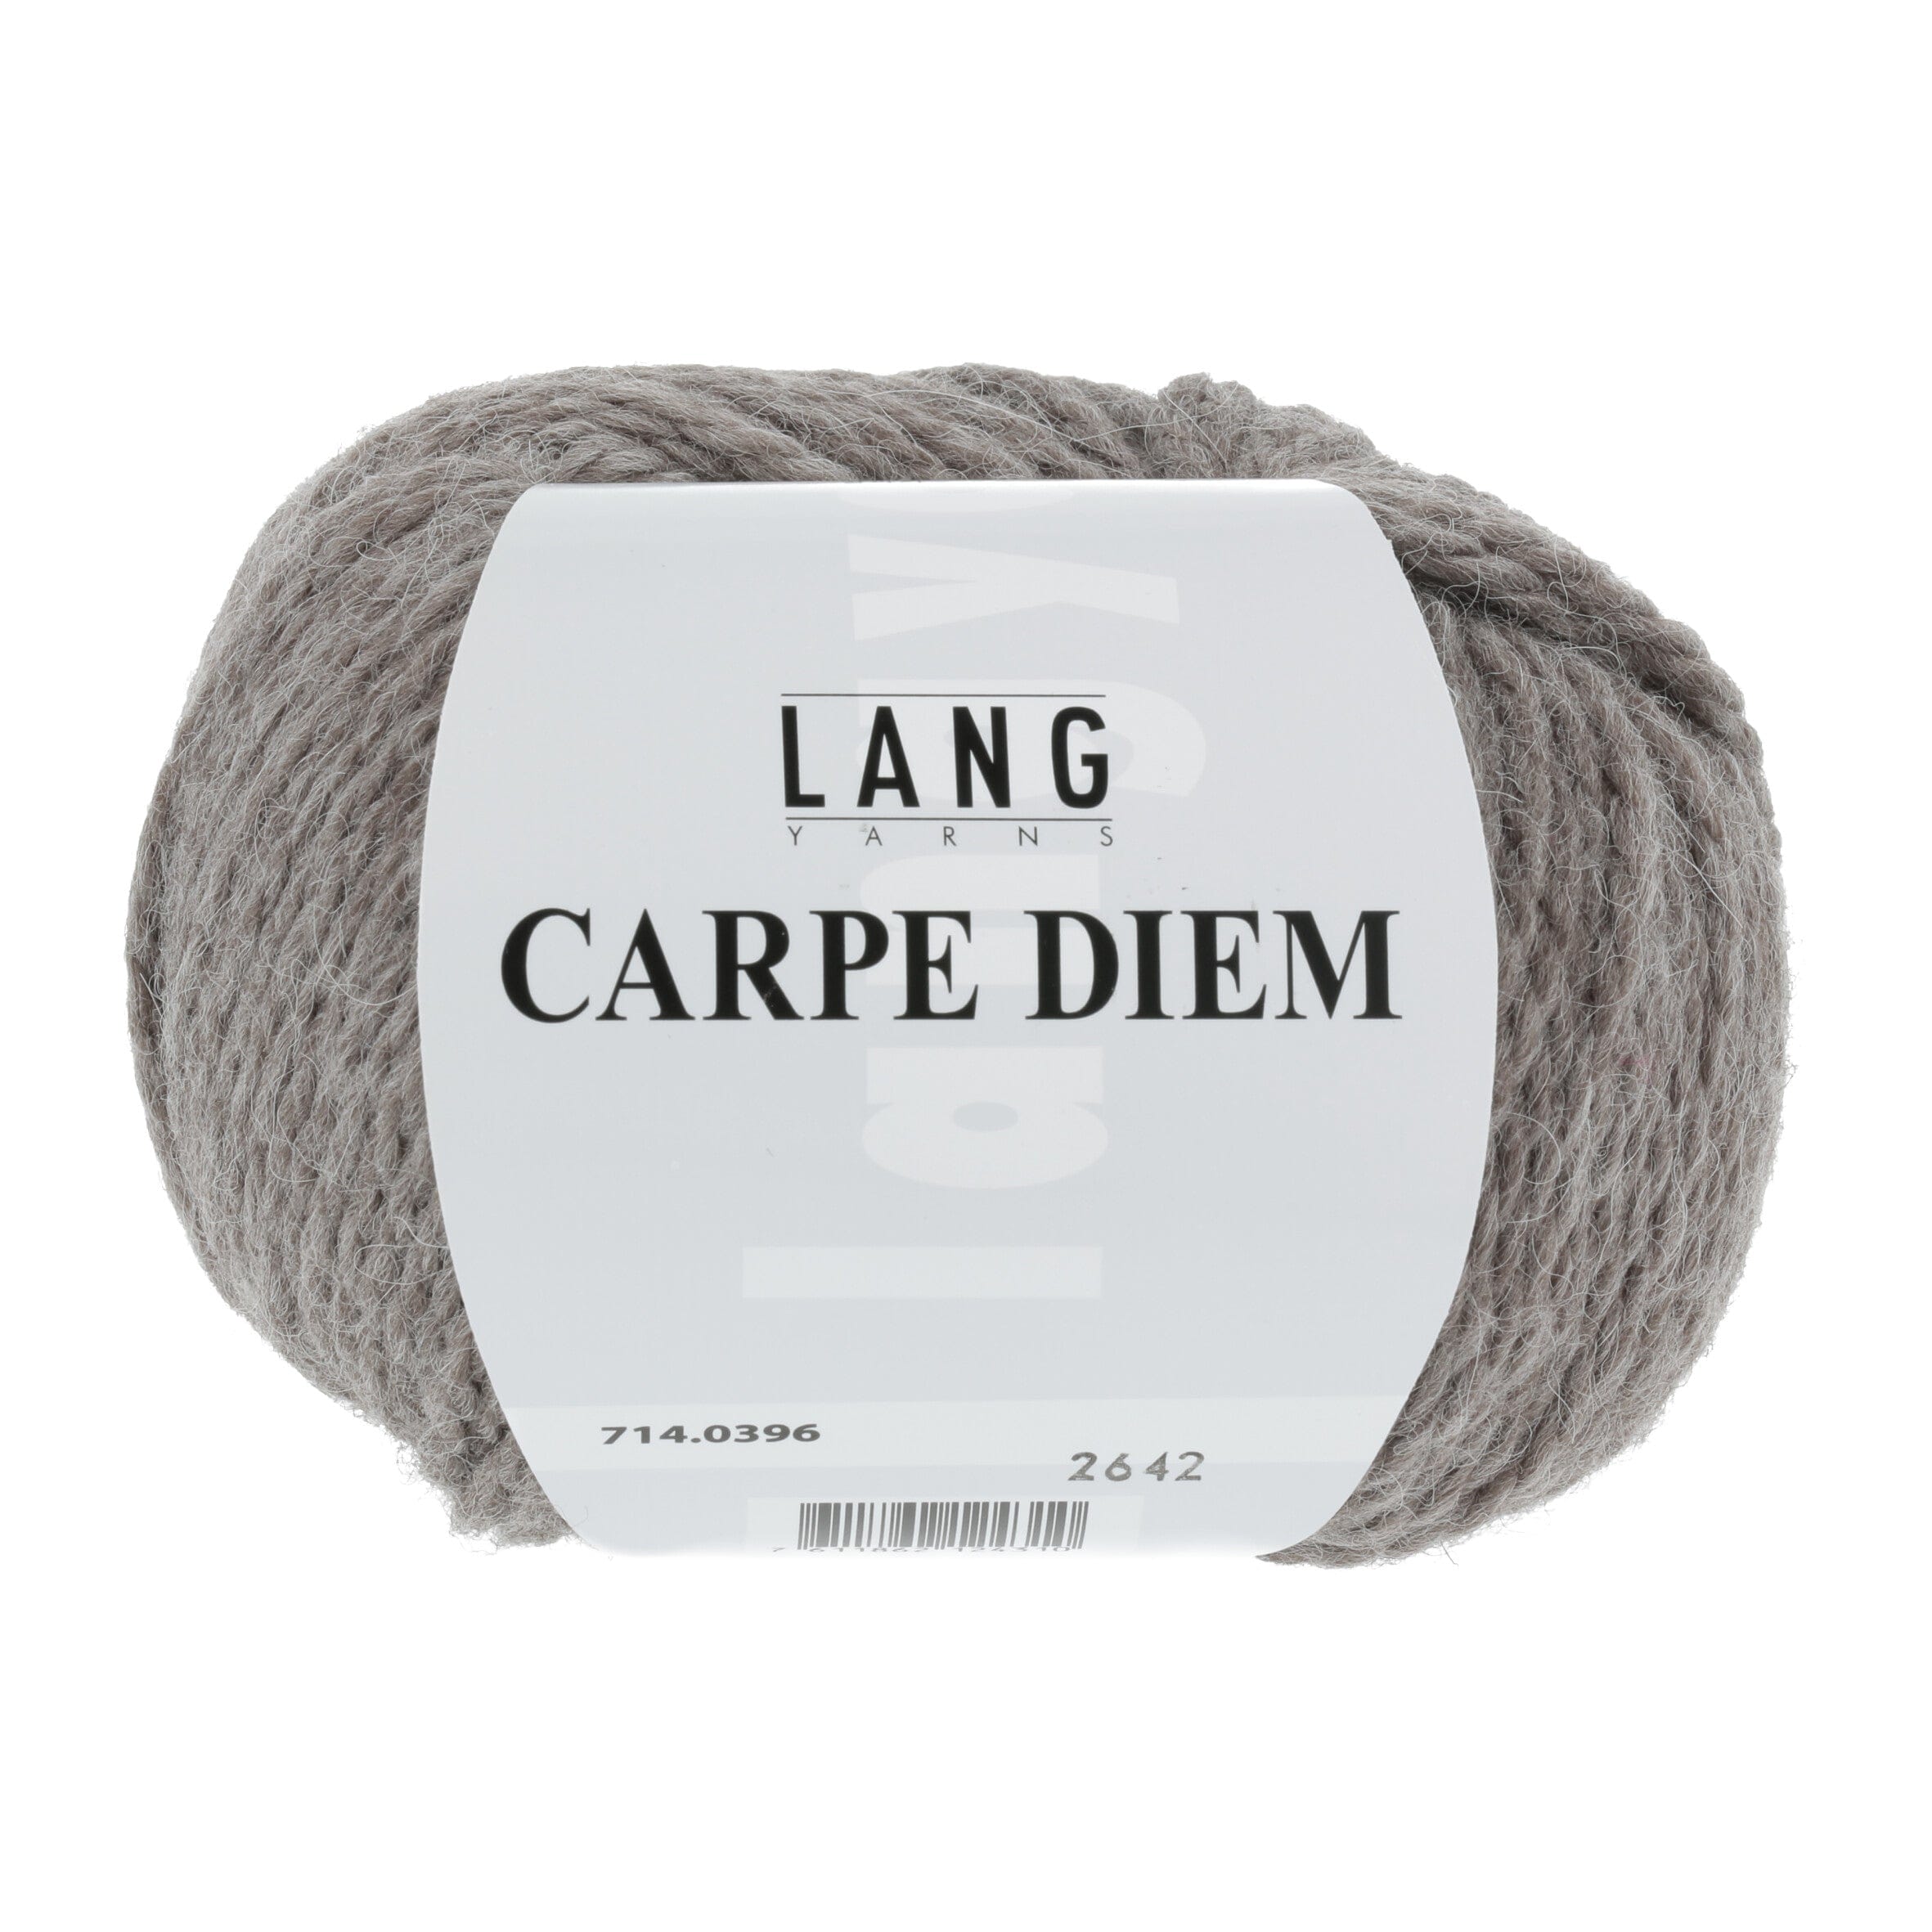 CARPE DIEM von LANG YARNS jetzt online kaufen bei OONIQUE